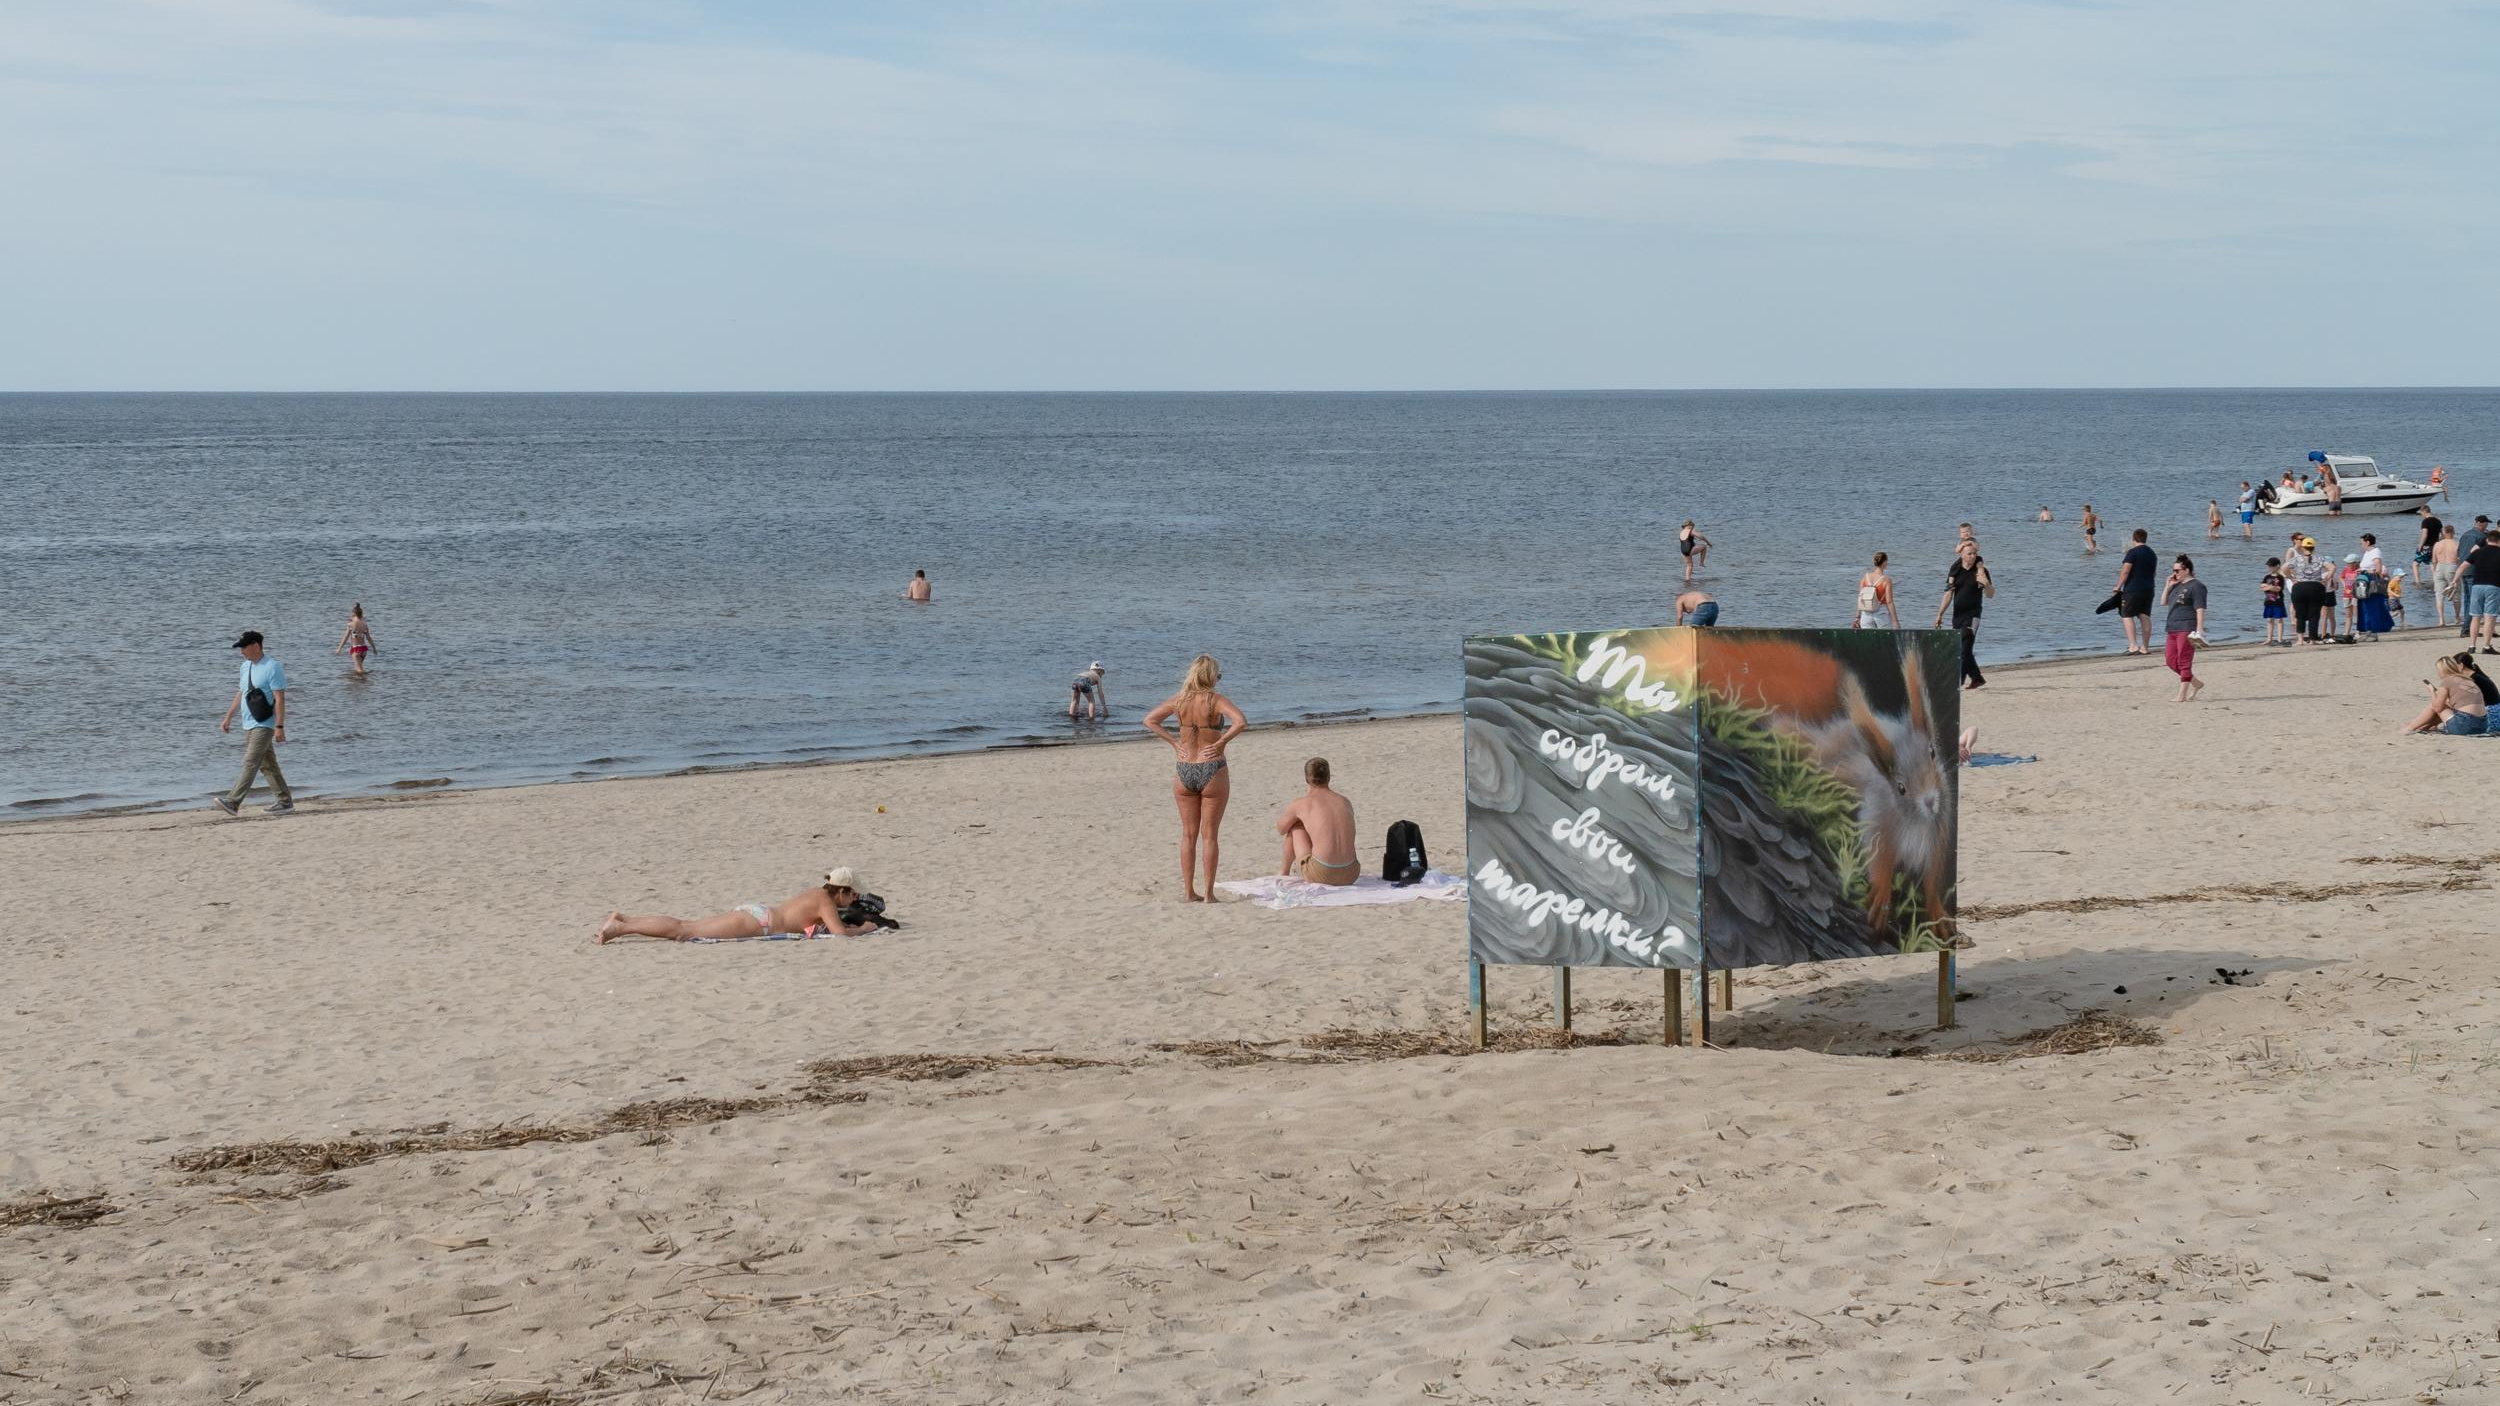 Мертвого мужчину достали из воды на пляже во Владивостоке. Следователи начали проверку